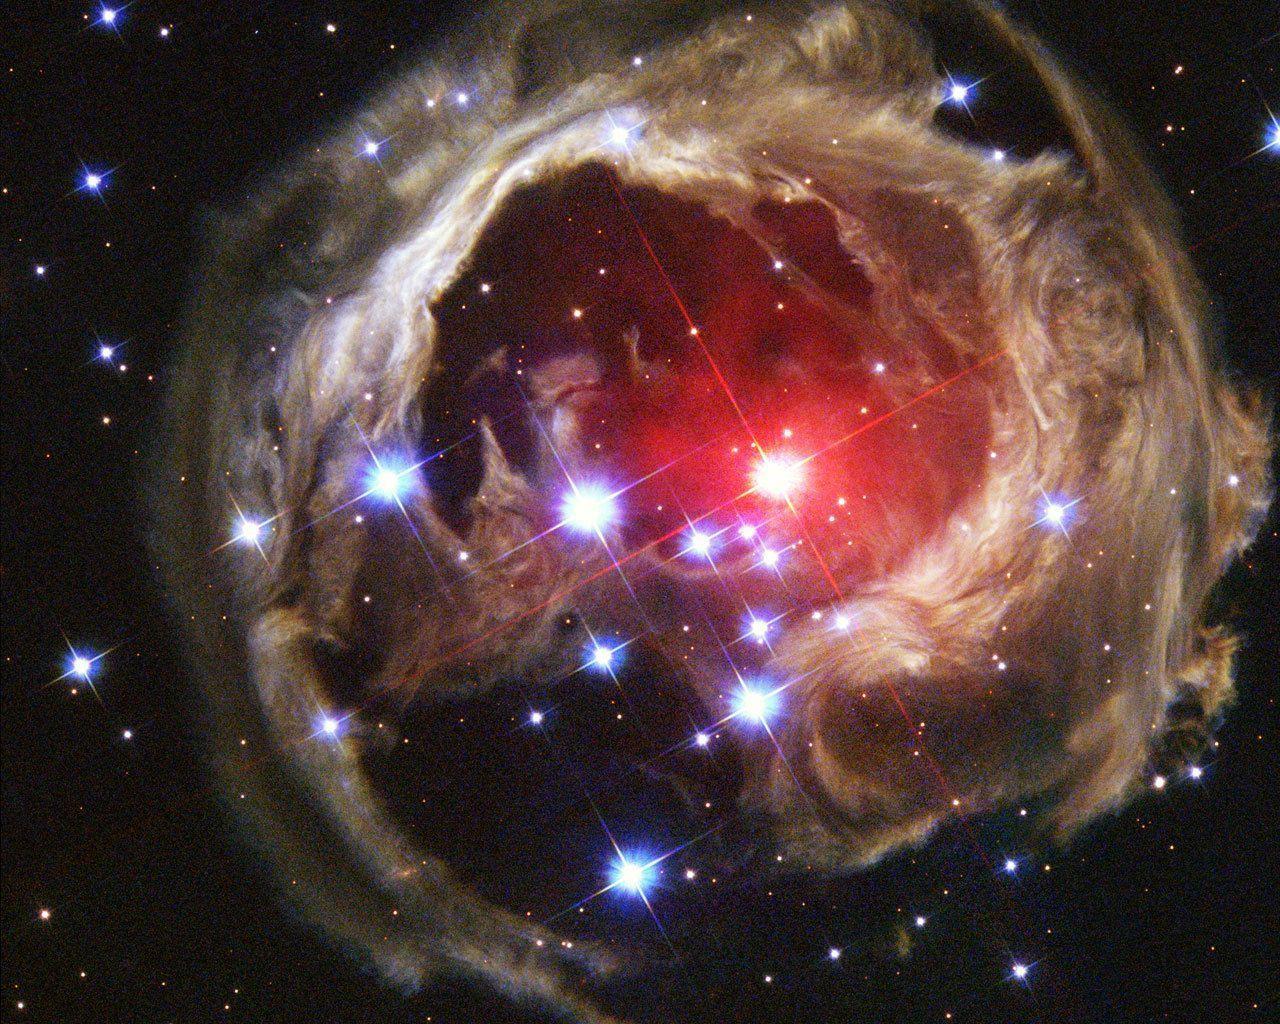 V838 Monocerotis Hubble Telescope Wallpaper